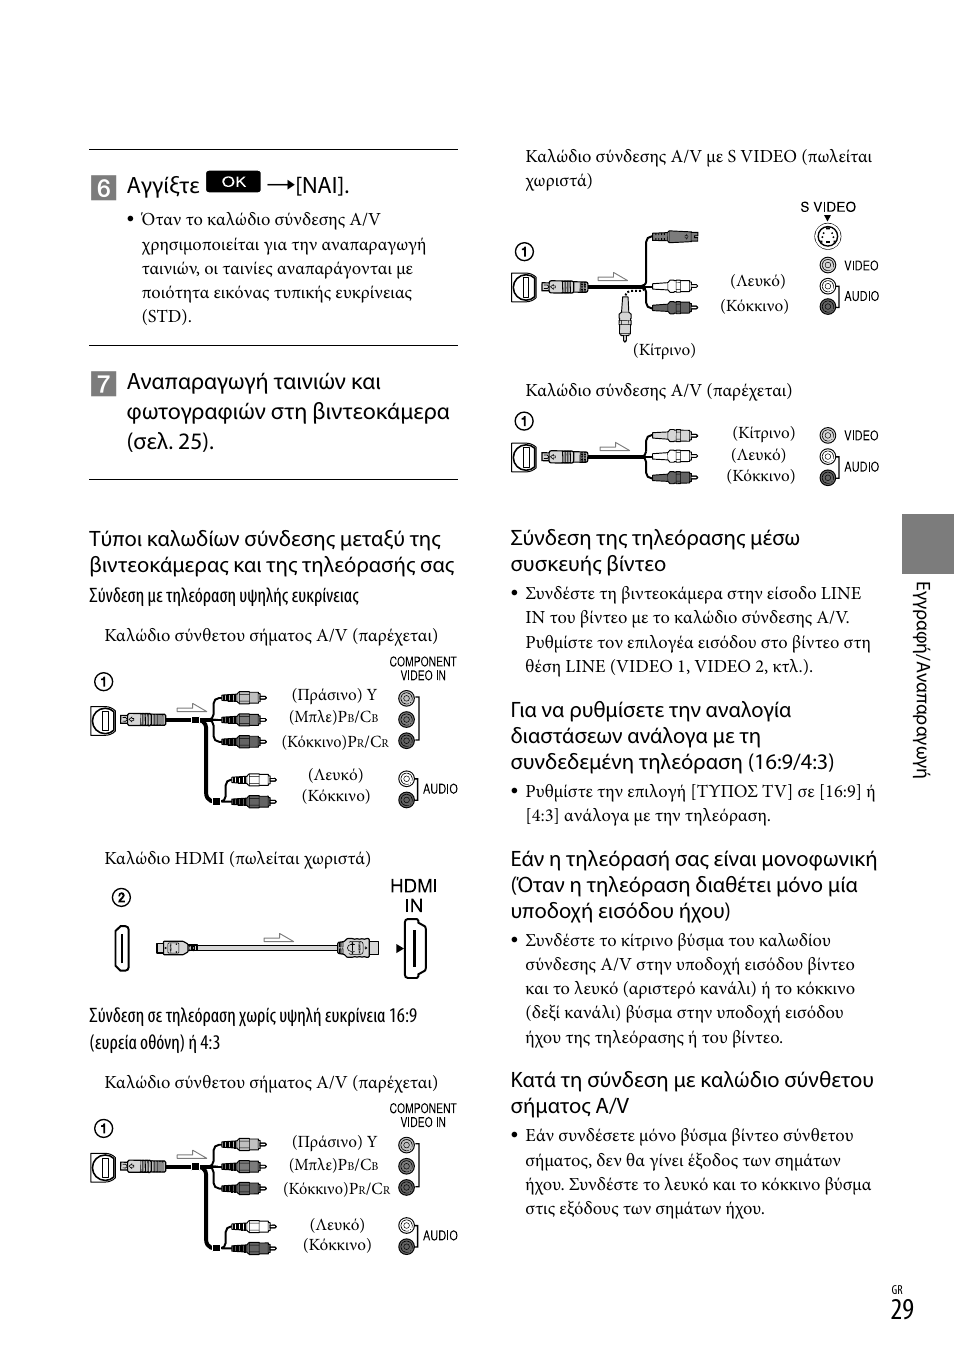 Αγγίξτε [ναι, Σύνδεση της τηλεόρασης μέσω συσκευής βίντεο, Κατά τη σύνδεση με καλώδιο σύνθετου σήματος a/v | Sony HDR-CX305E Manual del usuario | Página 177 / 307